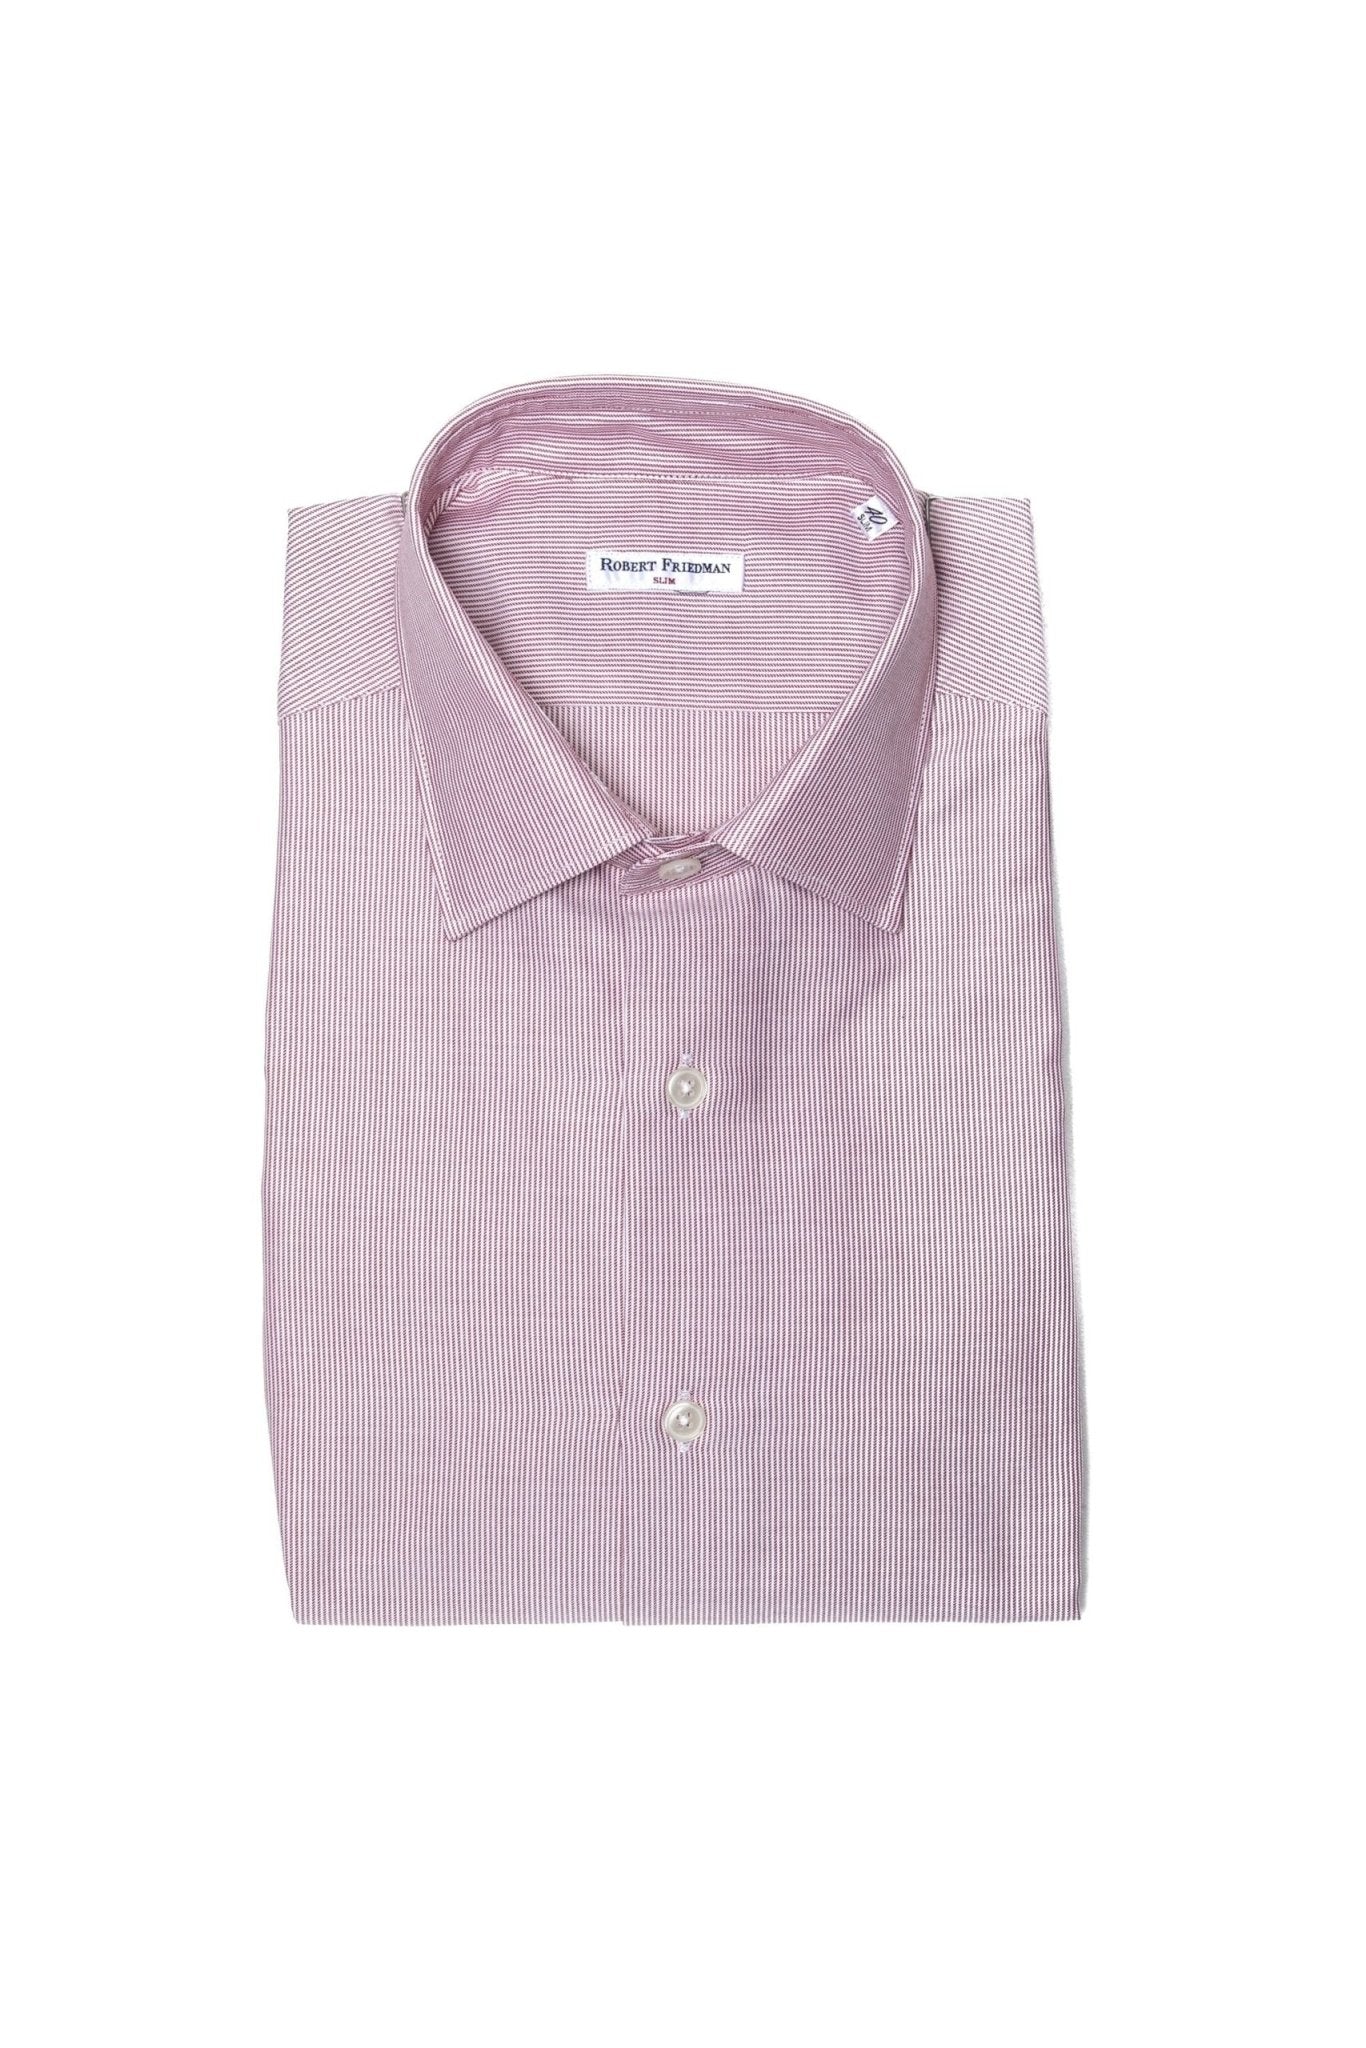 Robert Friedman Pink Cotton Shirt - Fizigo